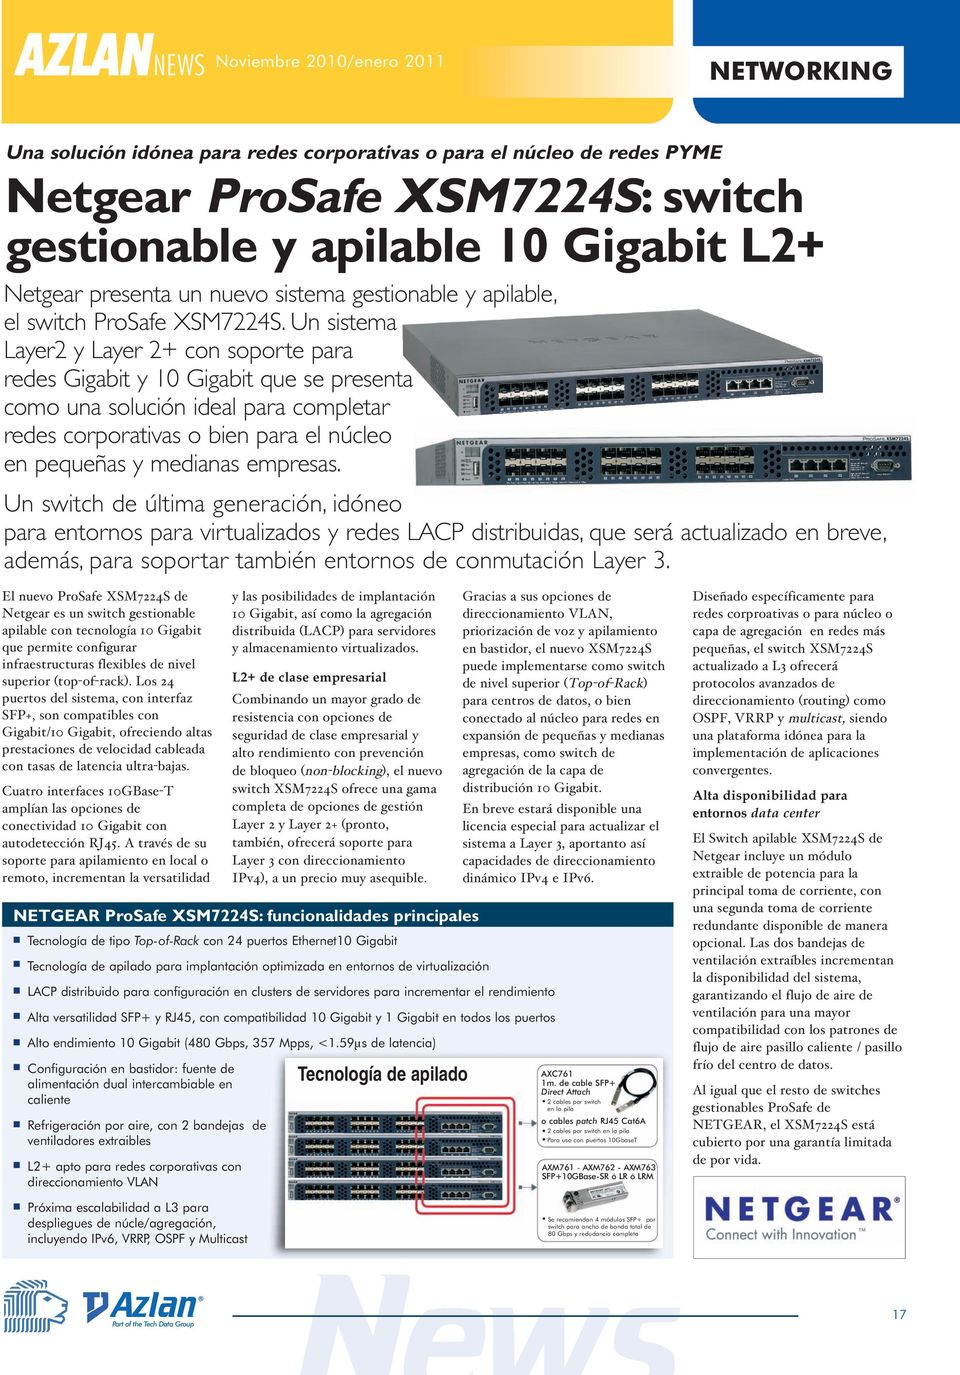 Un sistema Layer2 y Layer 2+ con soporte para redes Gigabit y 10 Gigabit que se presenta como una solución ideal para completar redes corporativas o bien para el núcleo en pequeñas y medianas